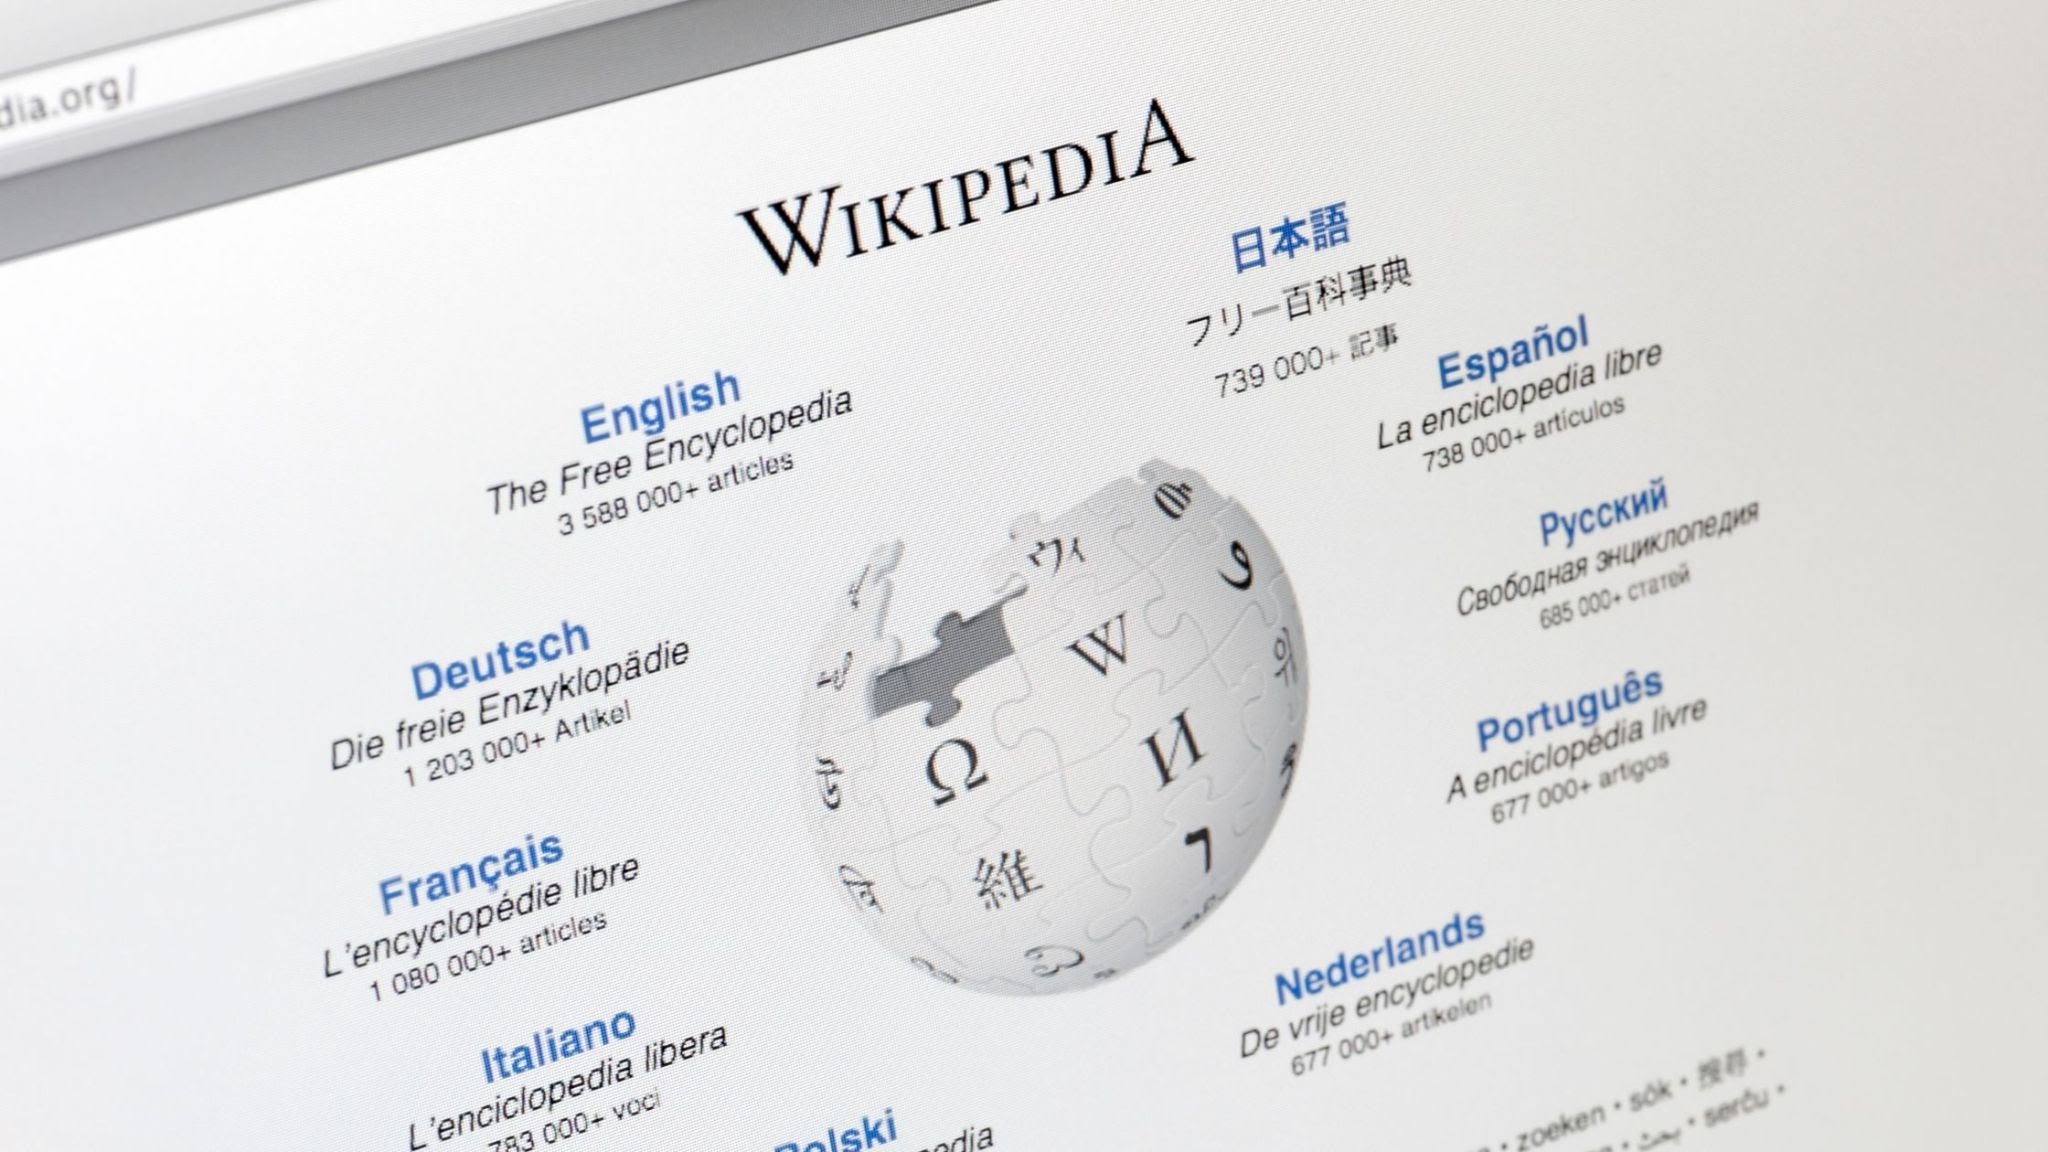 Media Markt - Wikipedia, la enciclopedia libre